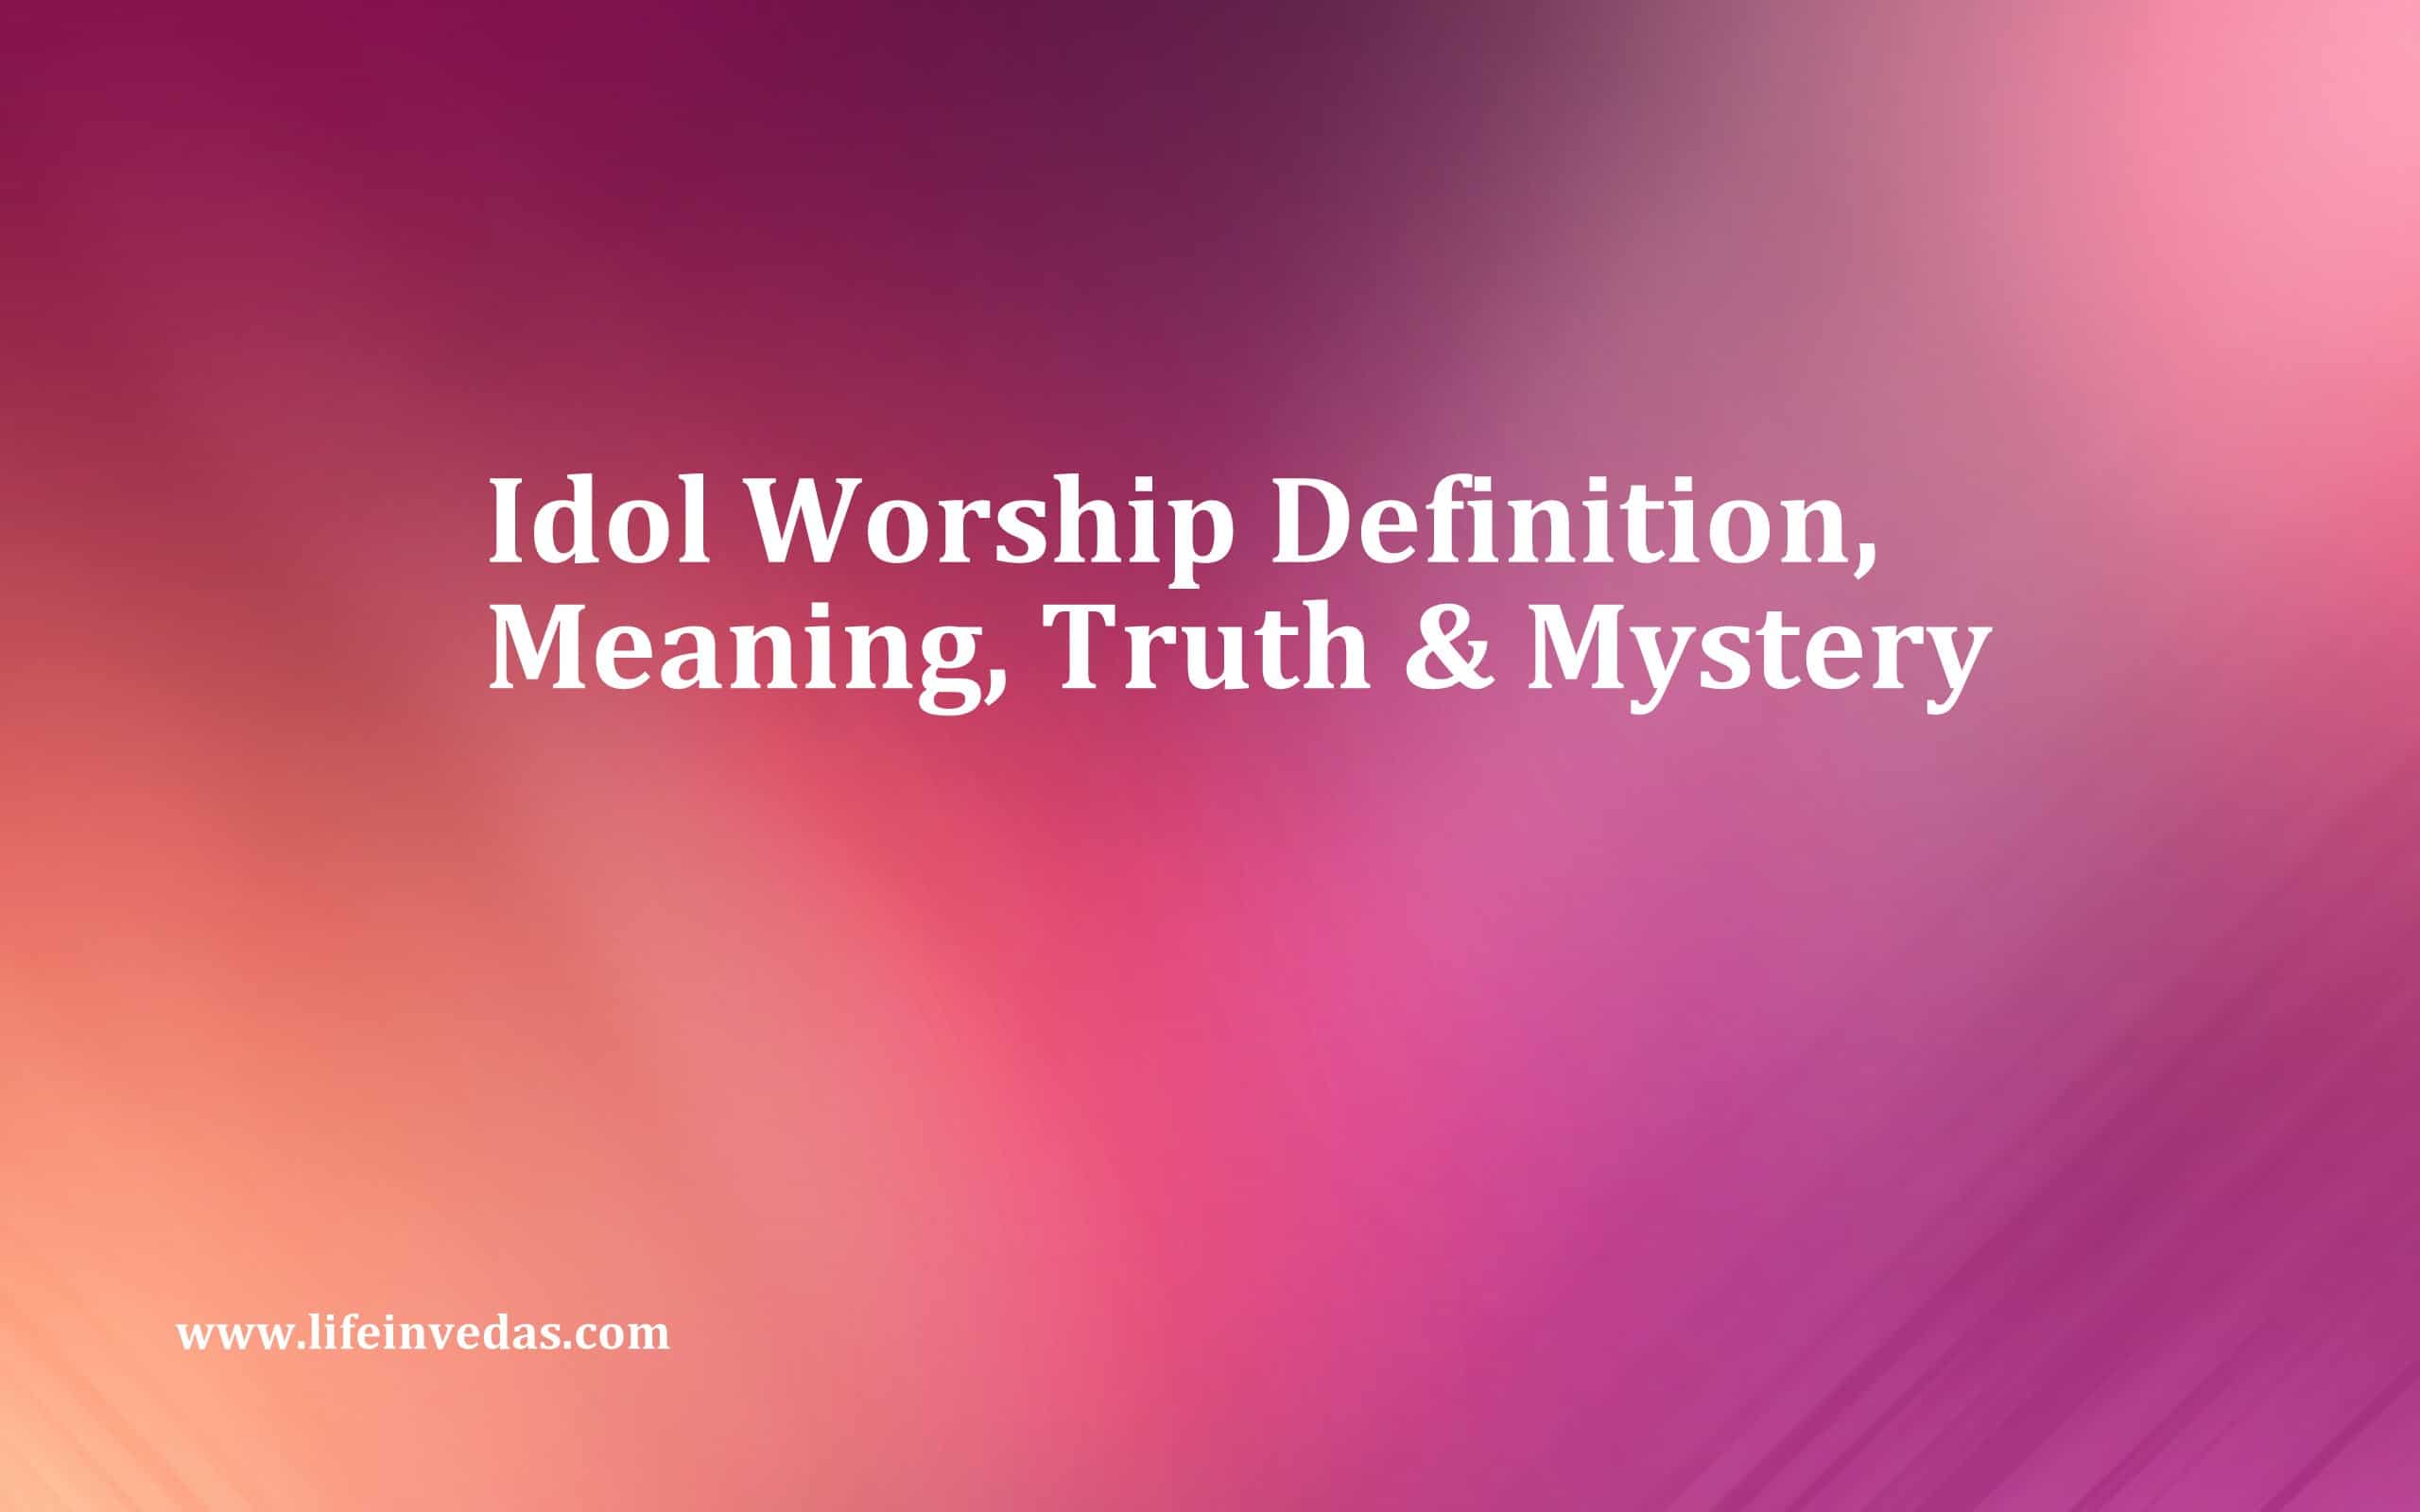 Idol Worship in Hinduism